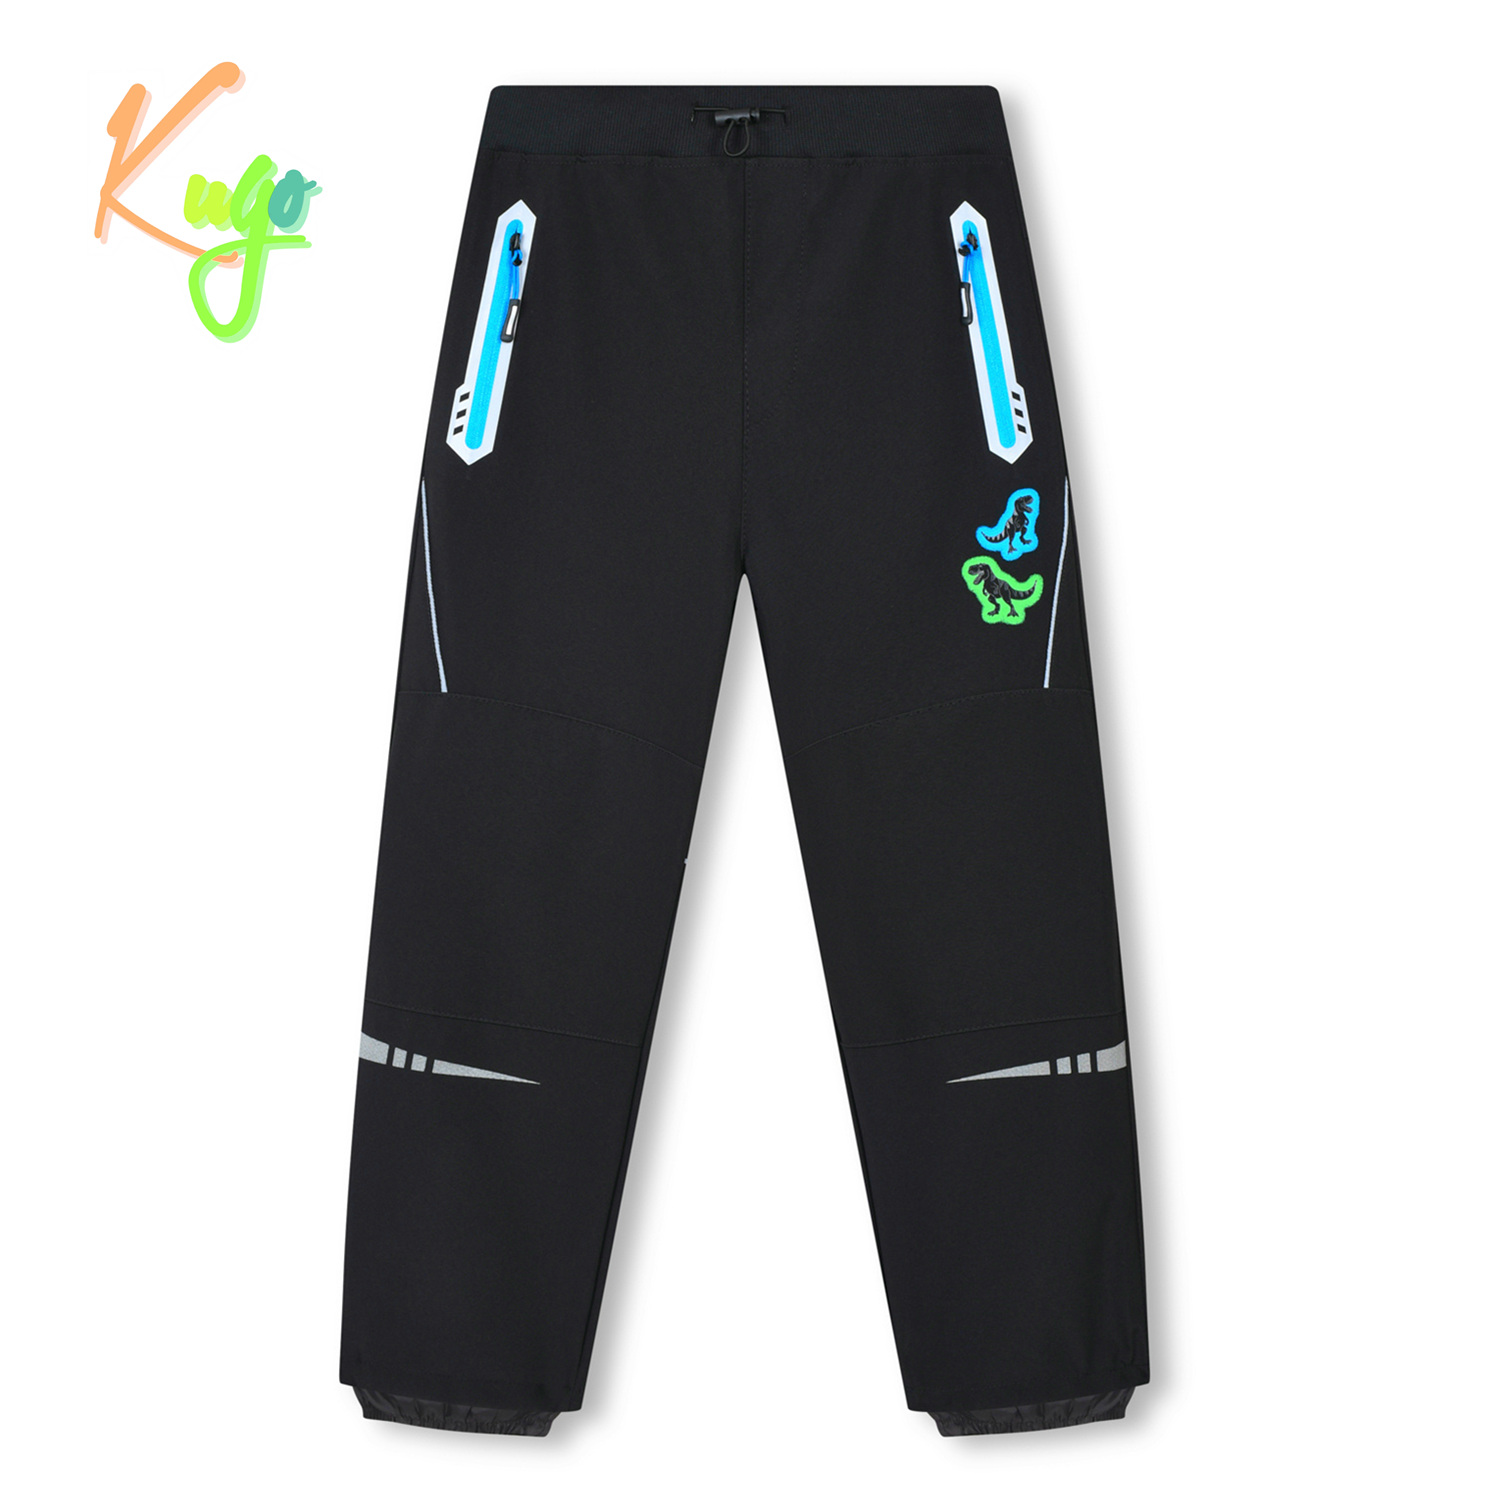 Chlapecké softshellové kalhoty - KUGO HK3116, černá / tyrkysové zipy Barva: Černá, Velikost: 122